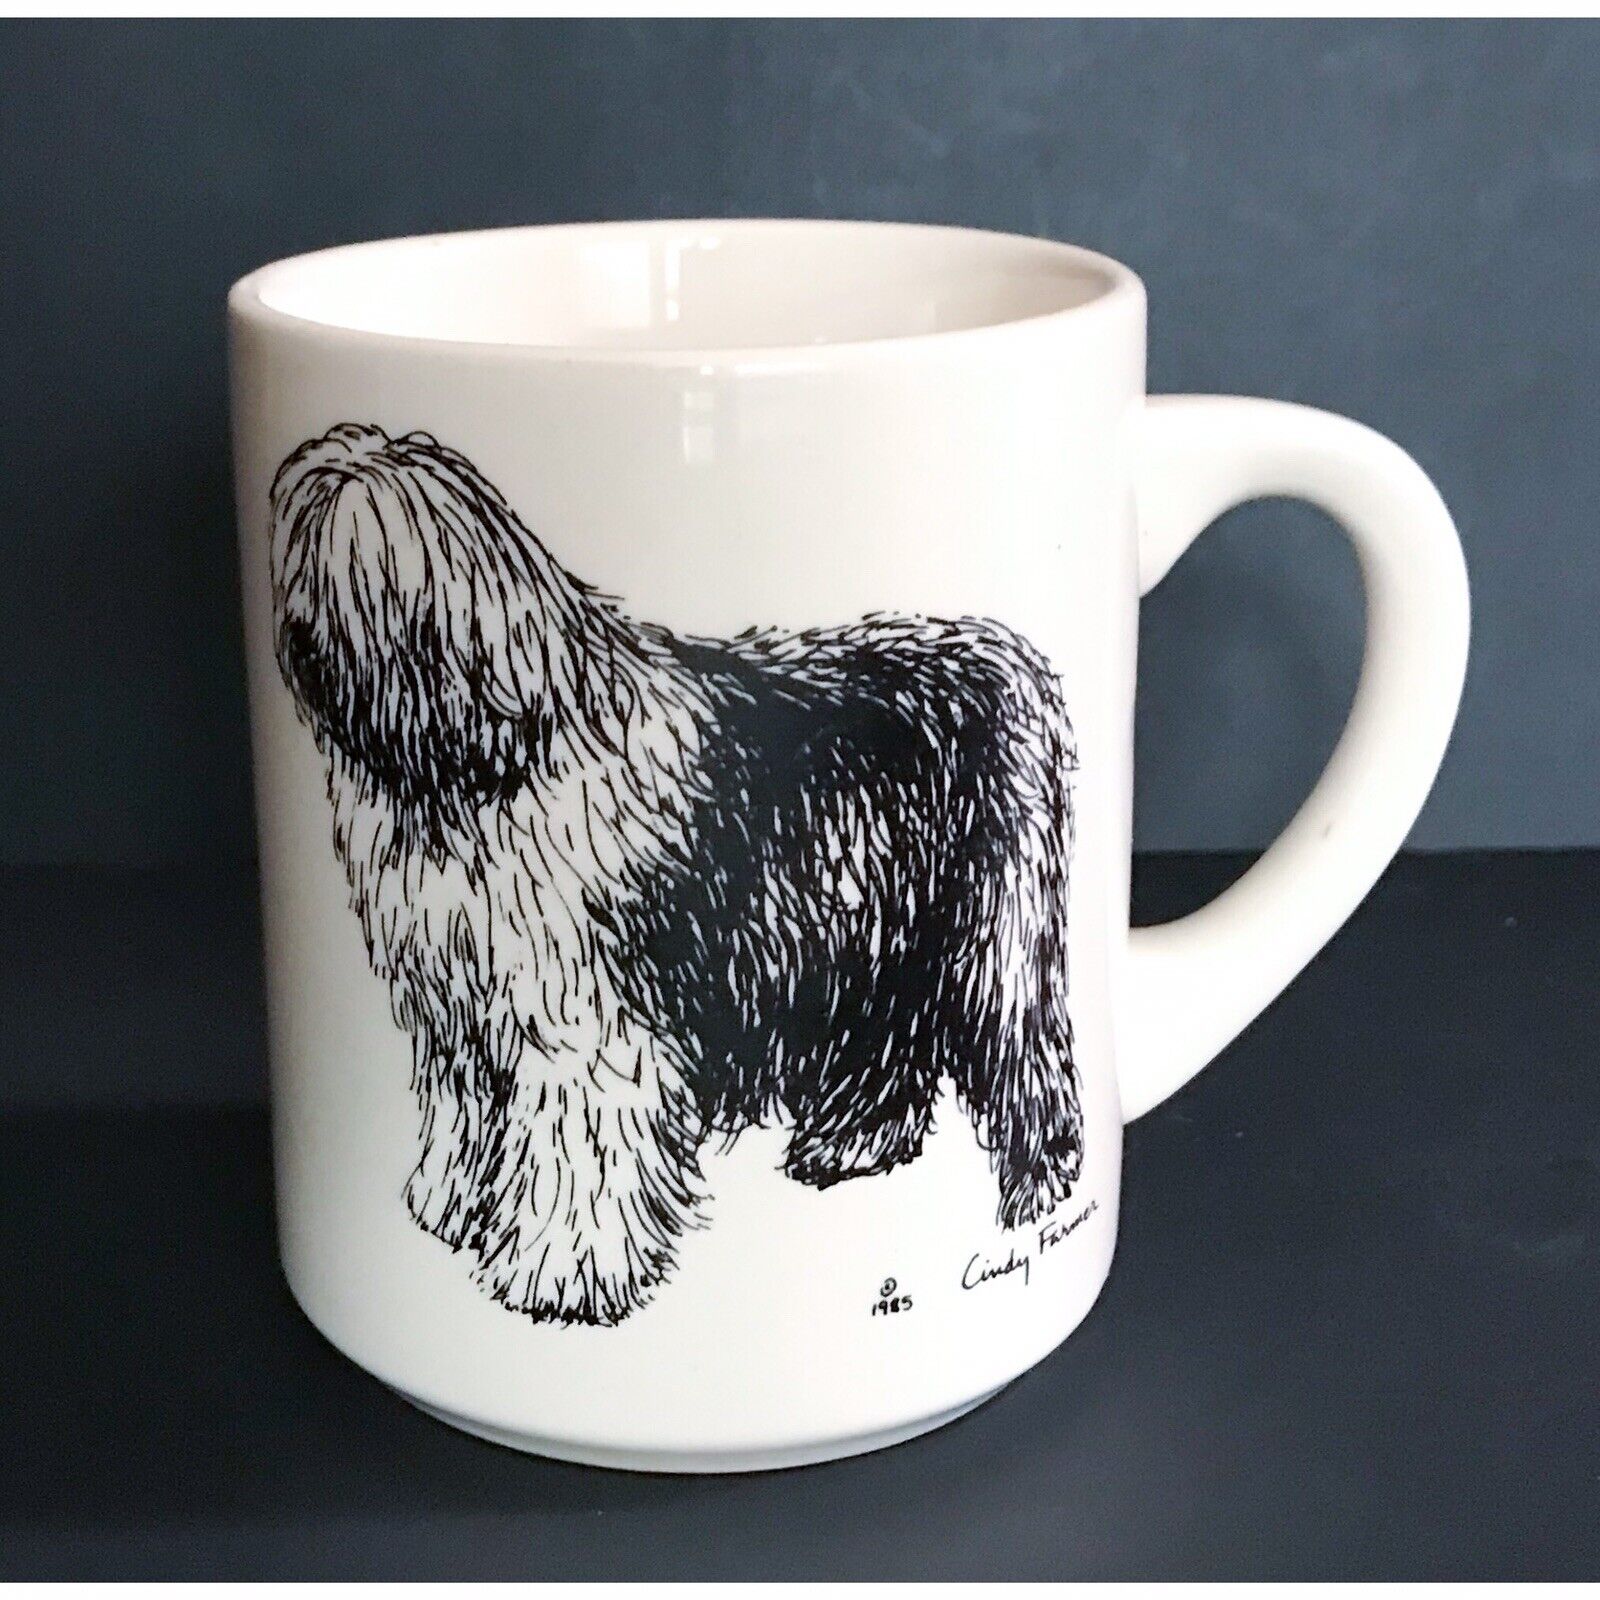 Vintage Cindy Farmer Shaggy Sheepdog Mug Coffee Cup Dog Lover Art